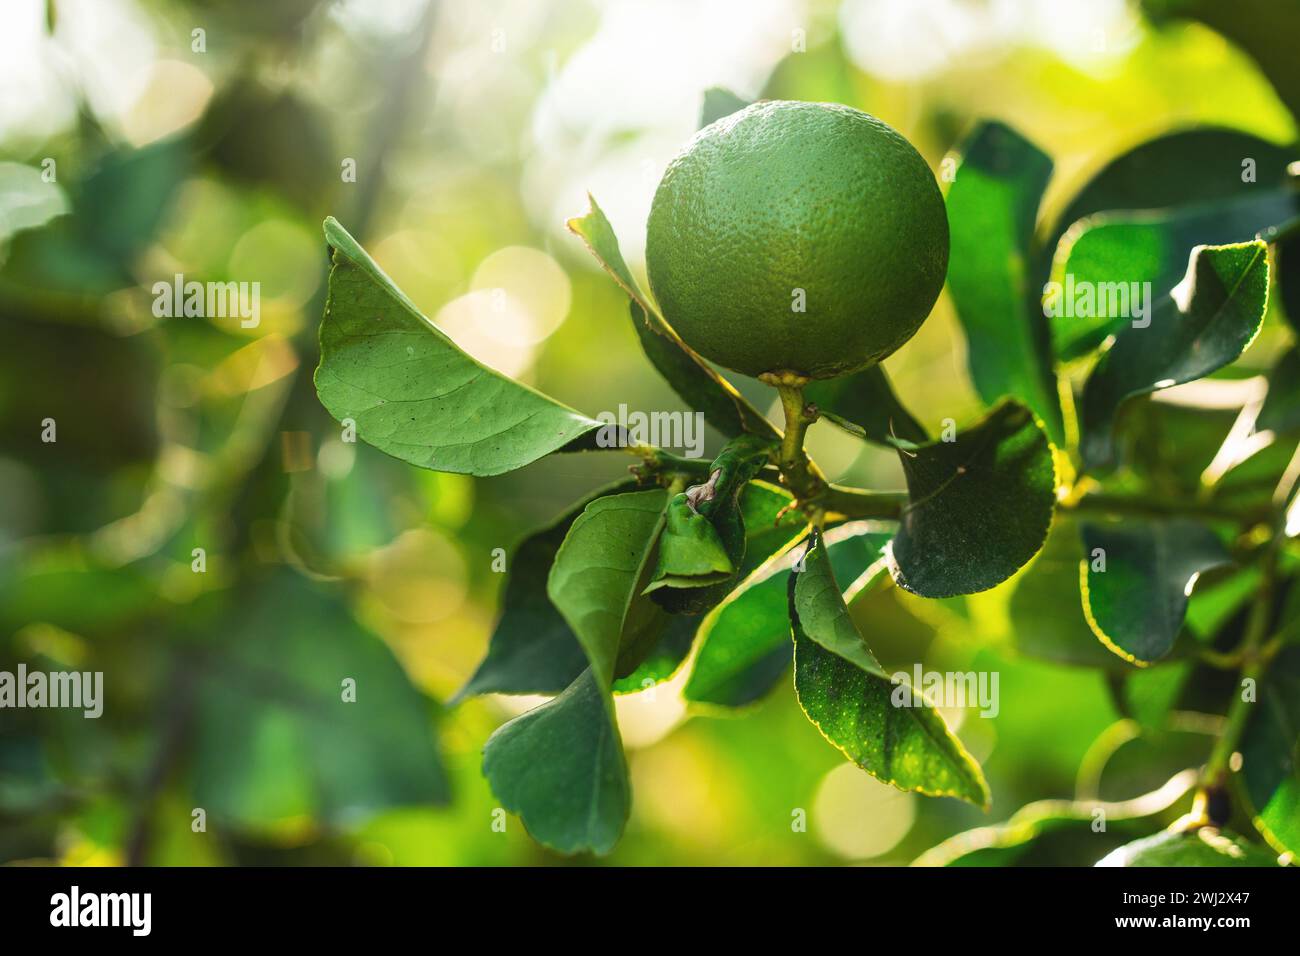 Limoni verdi maturi sul piccolo albero sempreverde Foto Stock